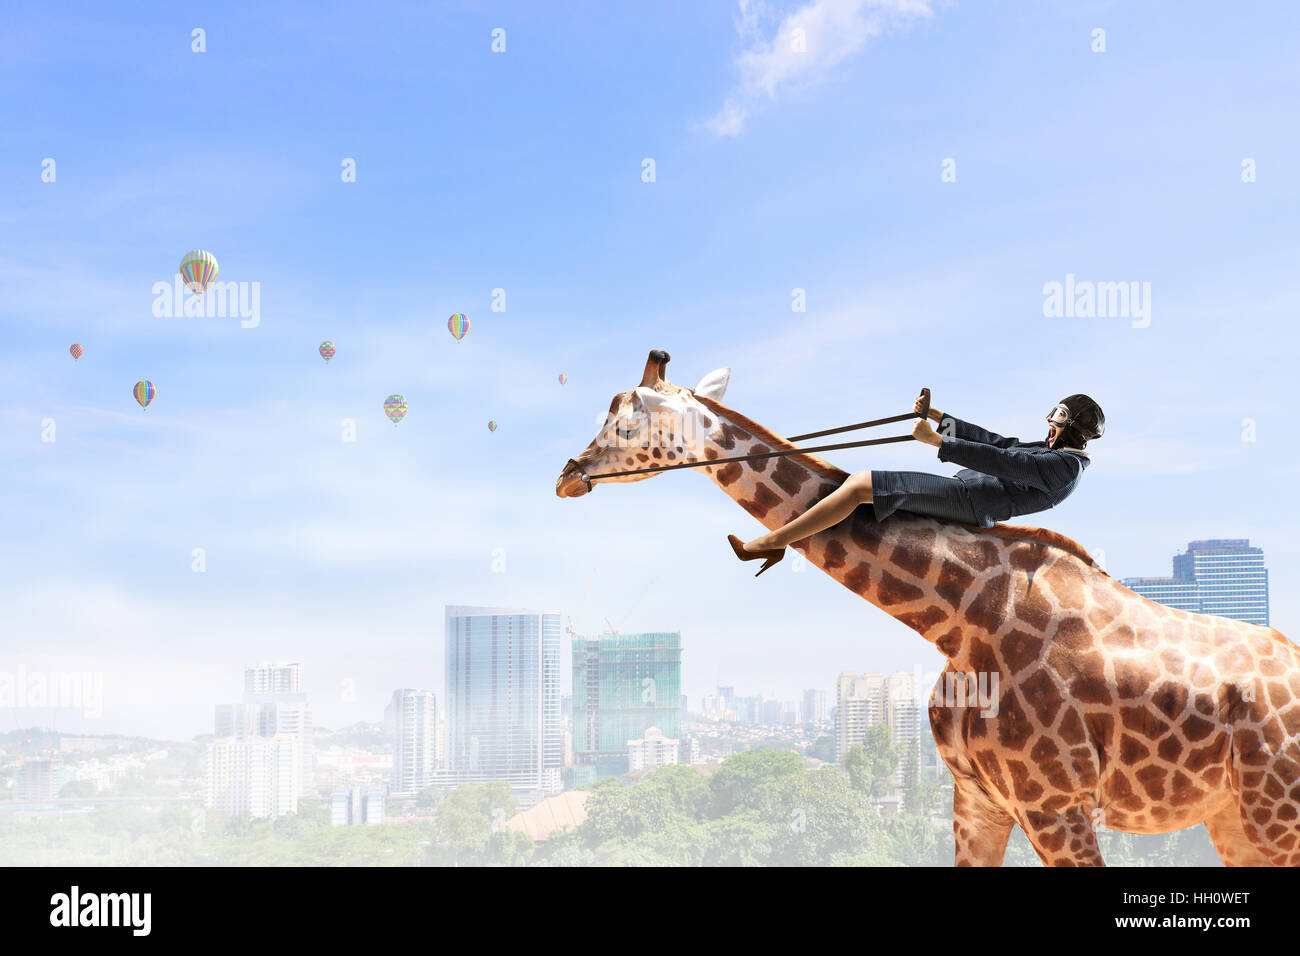 Jolie jeune femme intrépide équitation animaux girafe Banque D'Images